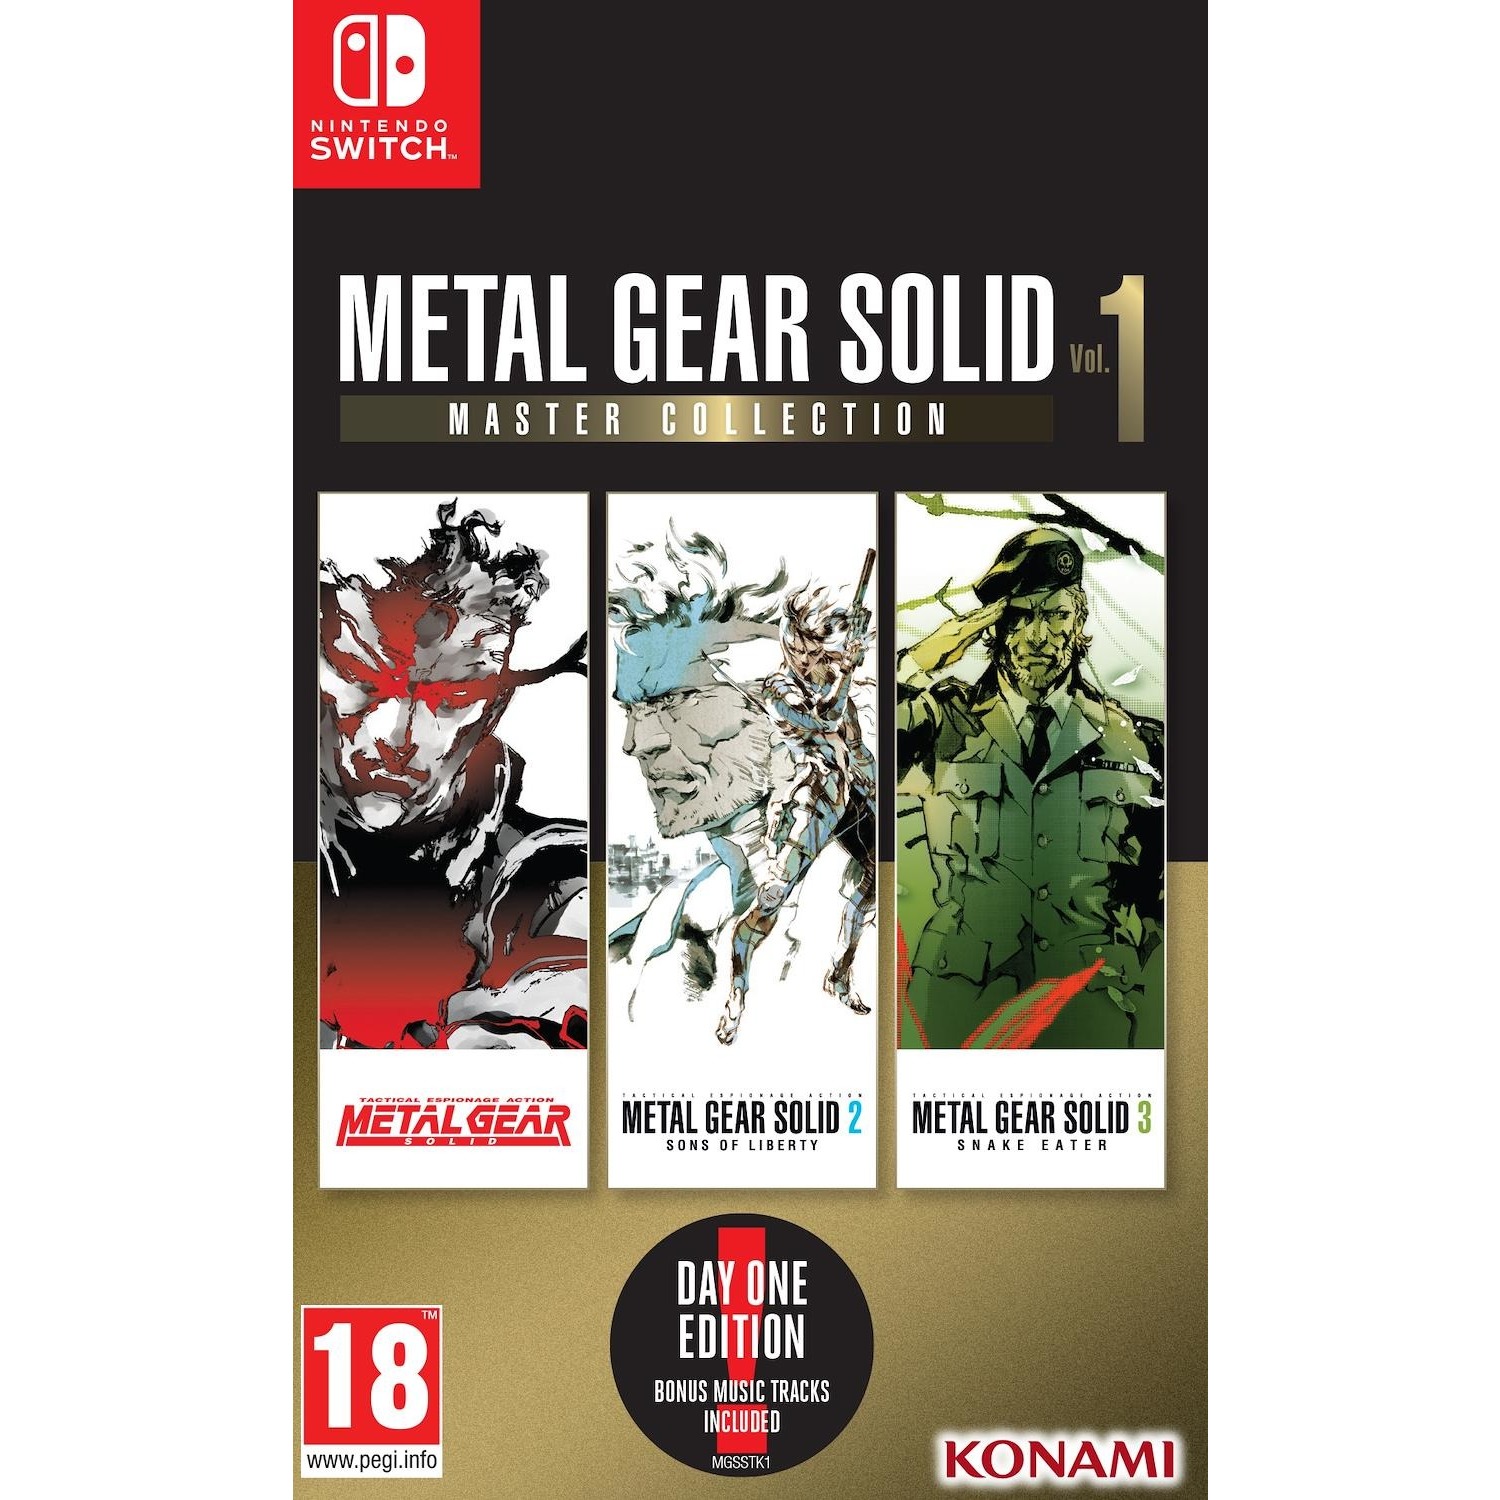 Immagine per Gioco Switch Metal Gear Solid Master Collection Vol.1 da DIMOStore